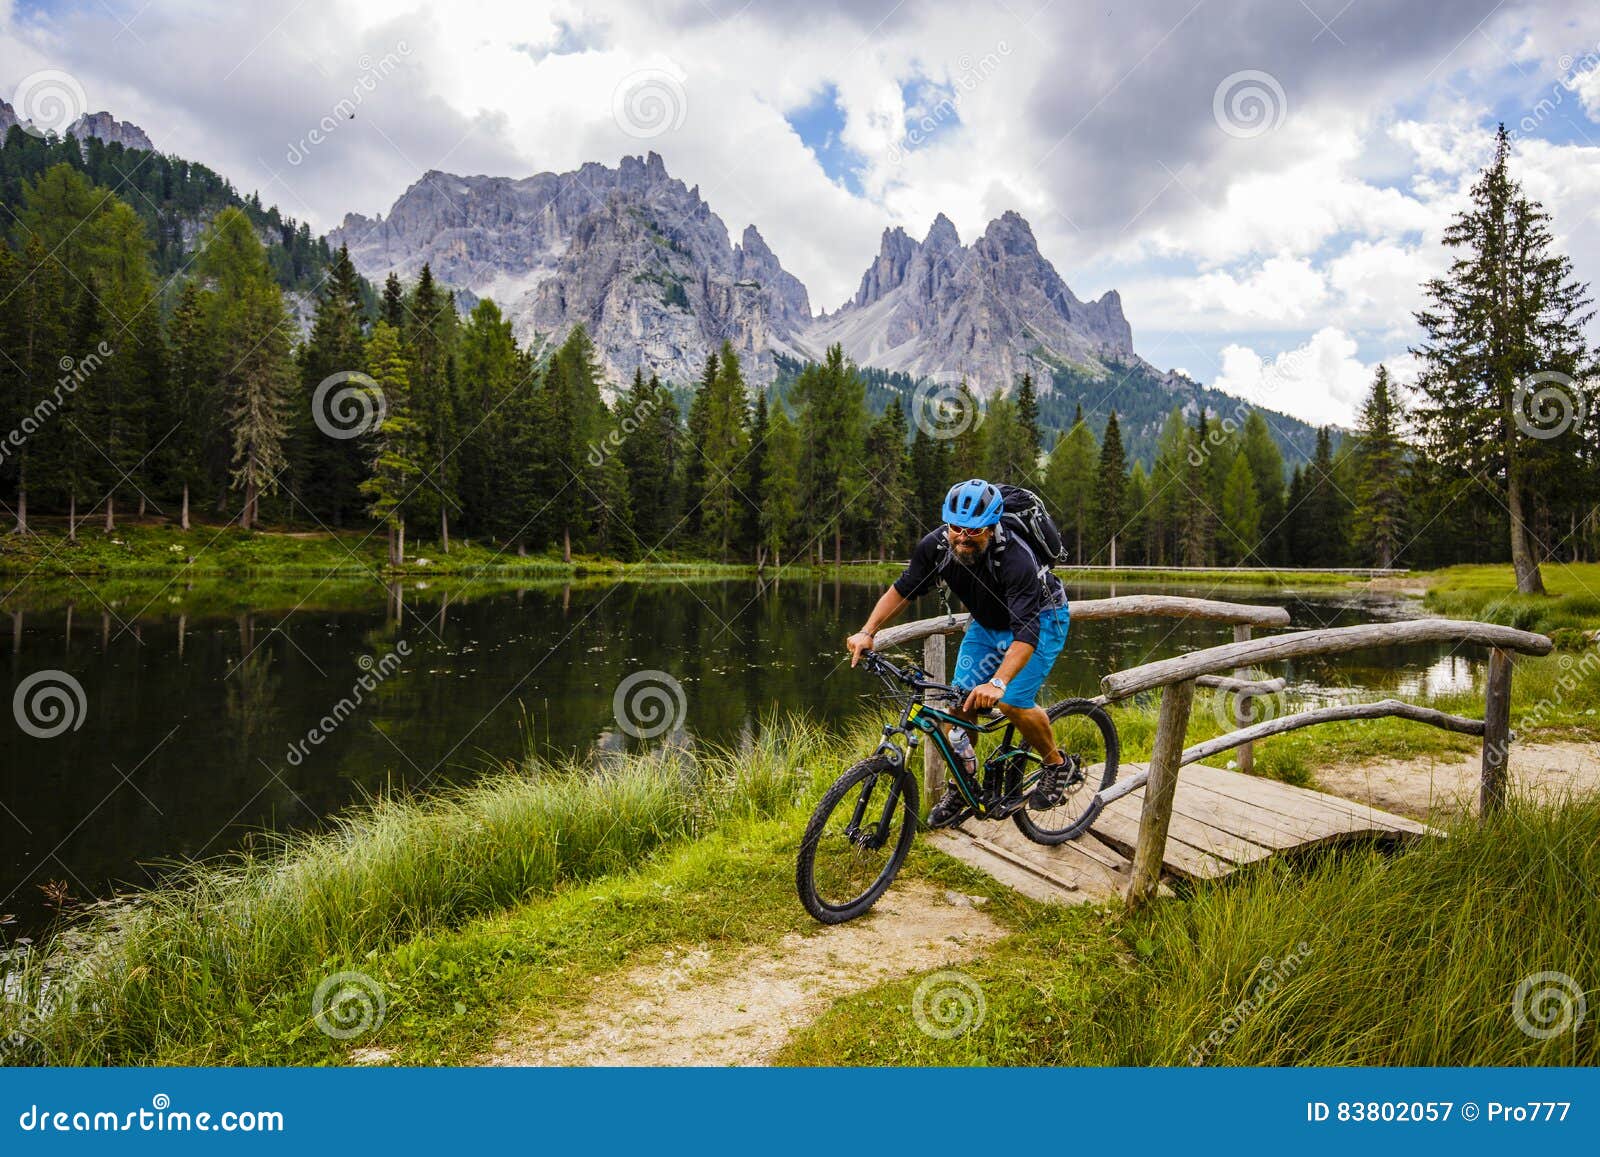 mountain biking in the dolomites, misurina, italy. tre cime di l